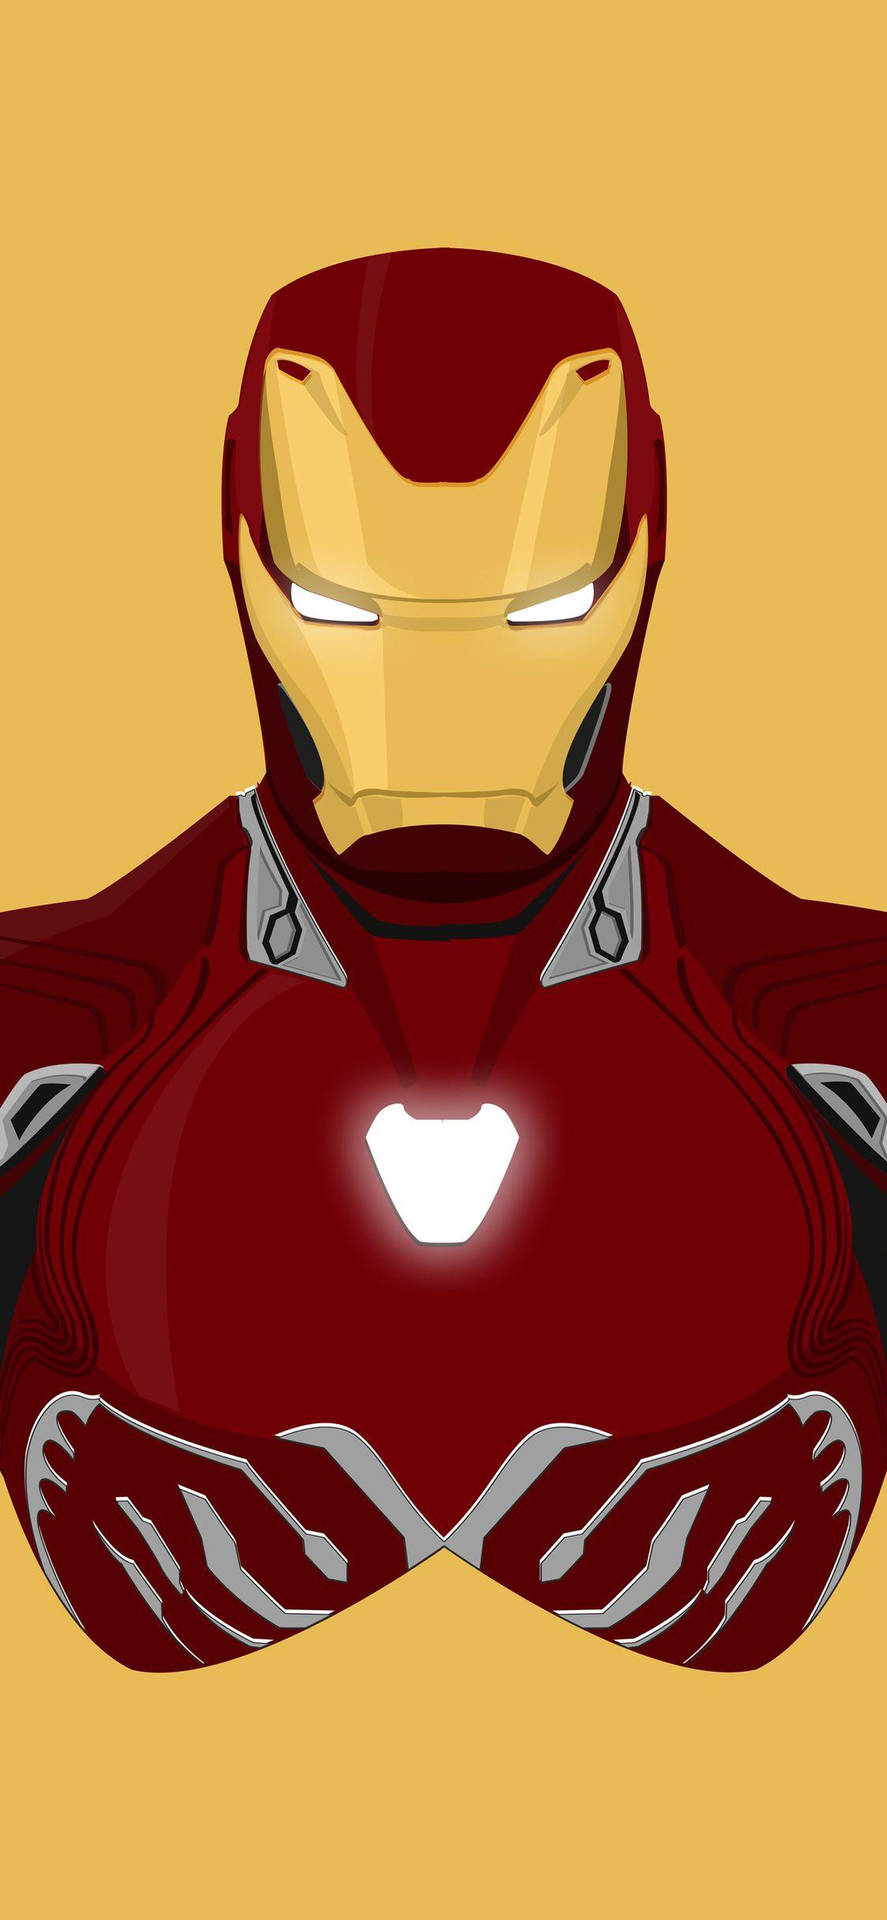 Free Iron Man Iphone Wallpaper Downloads, [100+] Iron Man Iphone Wallpapers  for FREE 